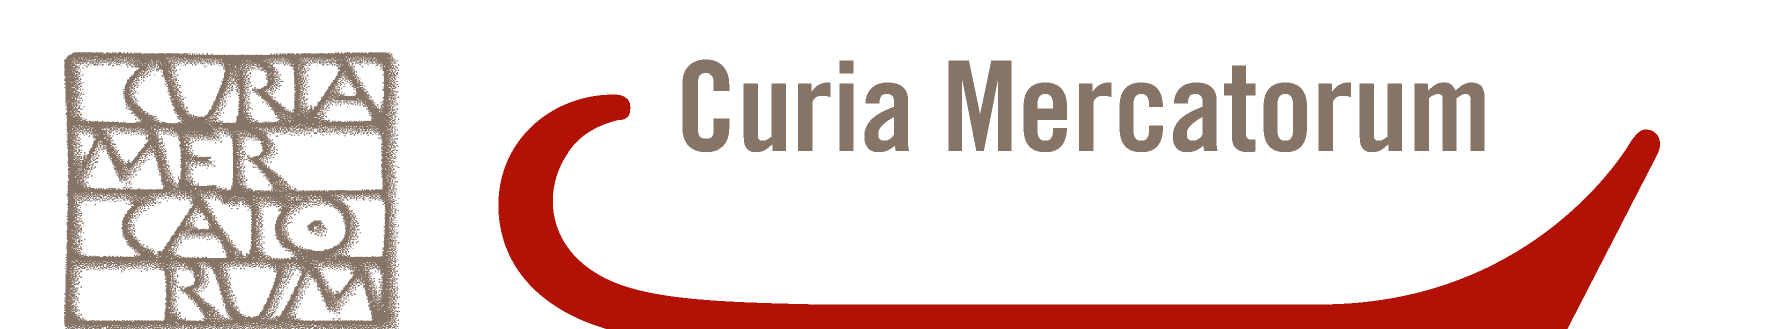 Curia Mercatorum CENTRO DI MEDIAZIONE ED ARBITRATO Associazione Riconosciuta promossa dalla Camera di Commercio di Treviso Iscritto al n.